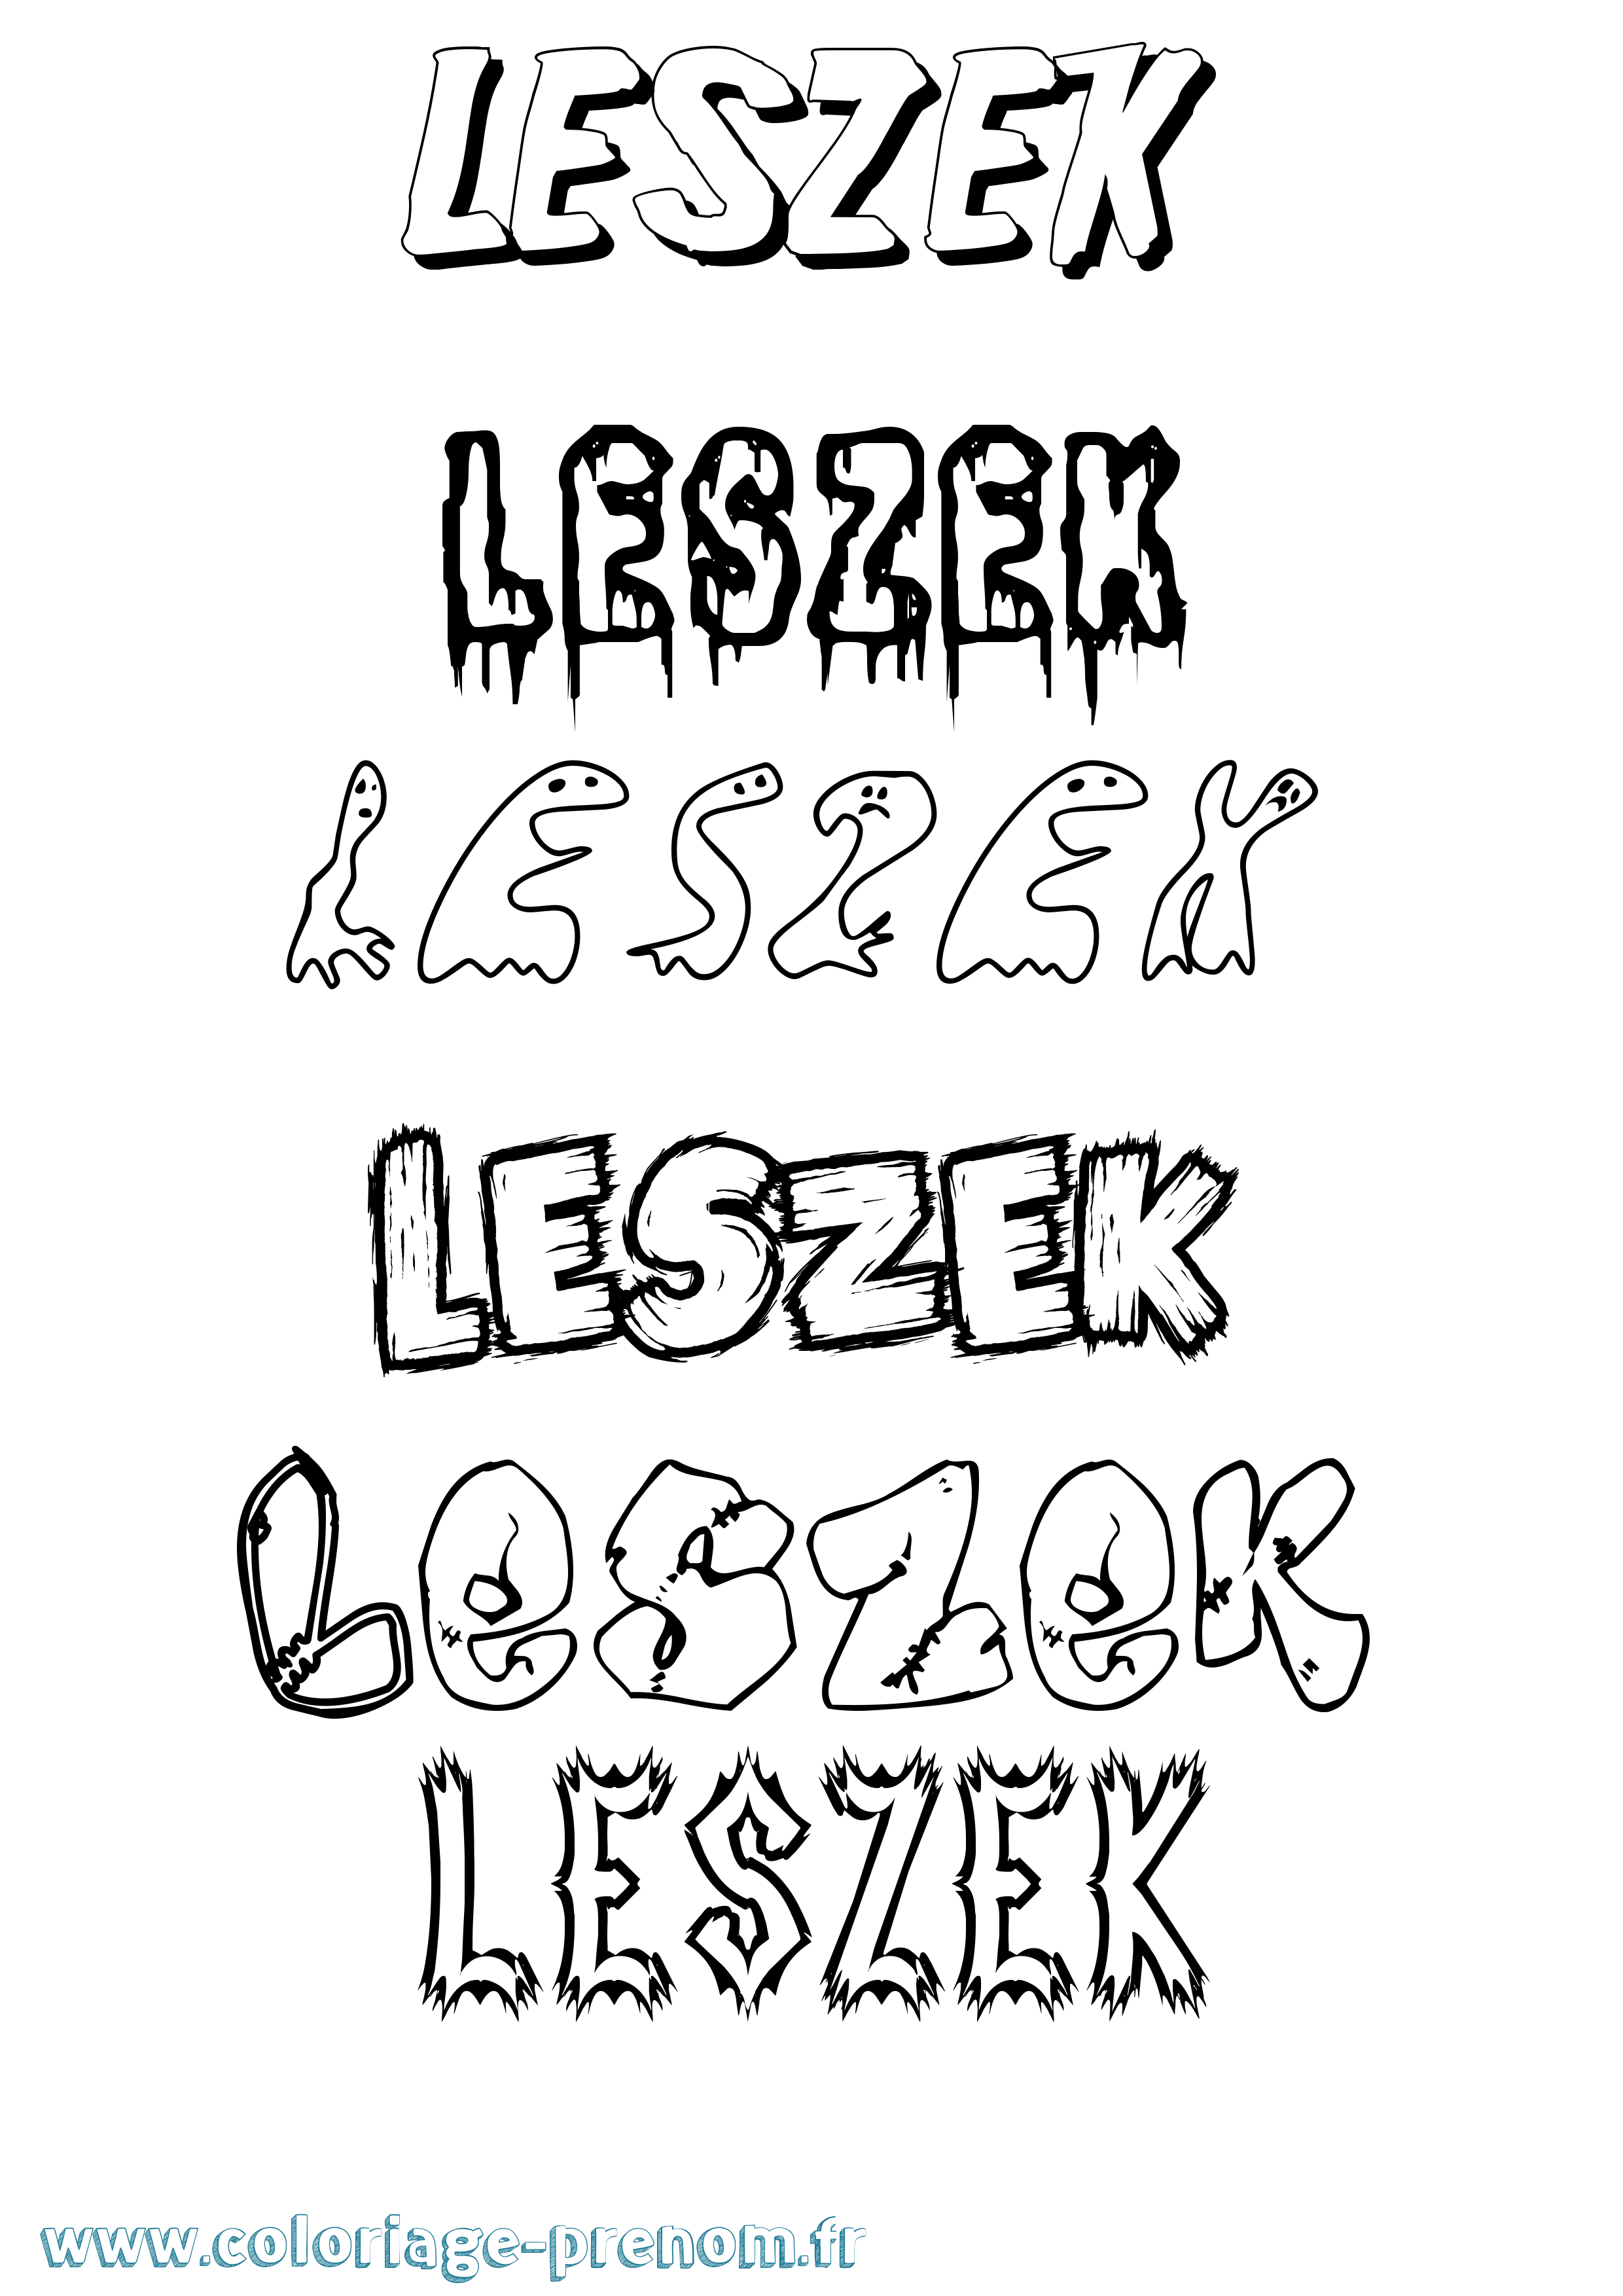 Coloriage prénom Leszek Frisson